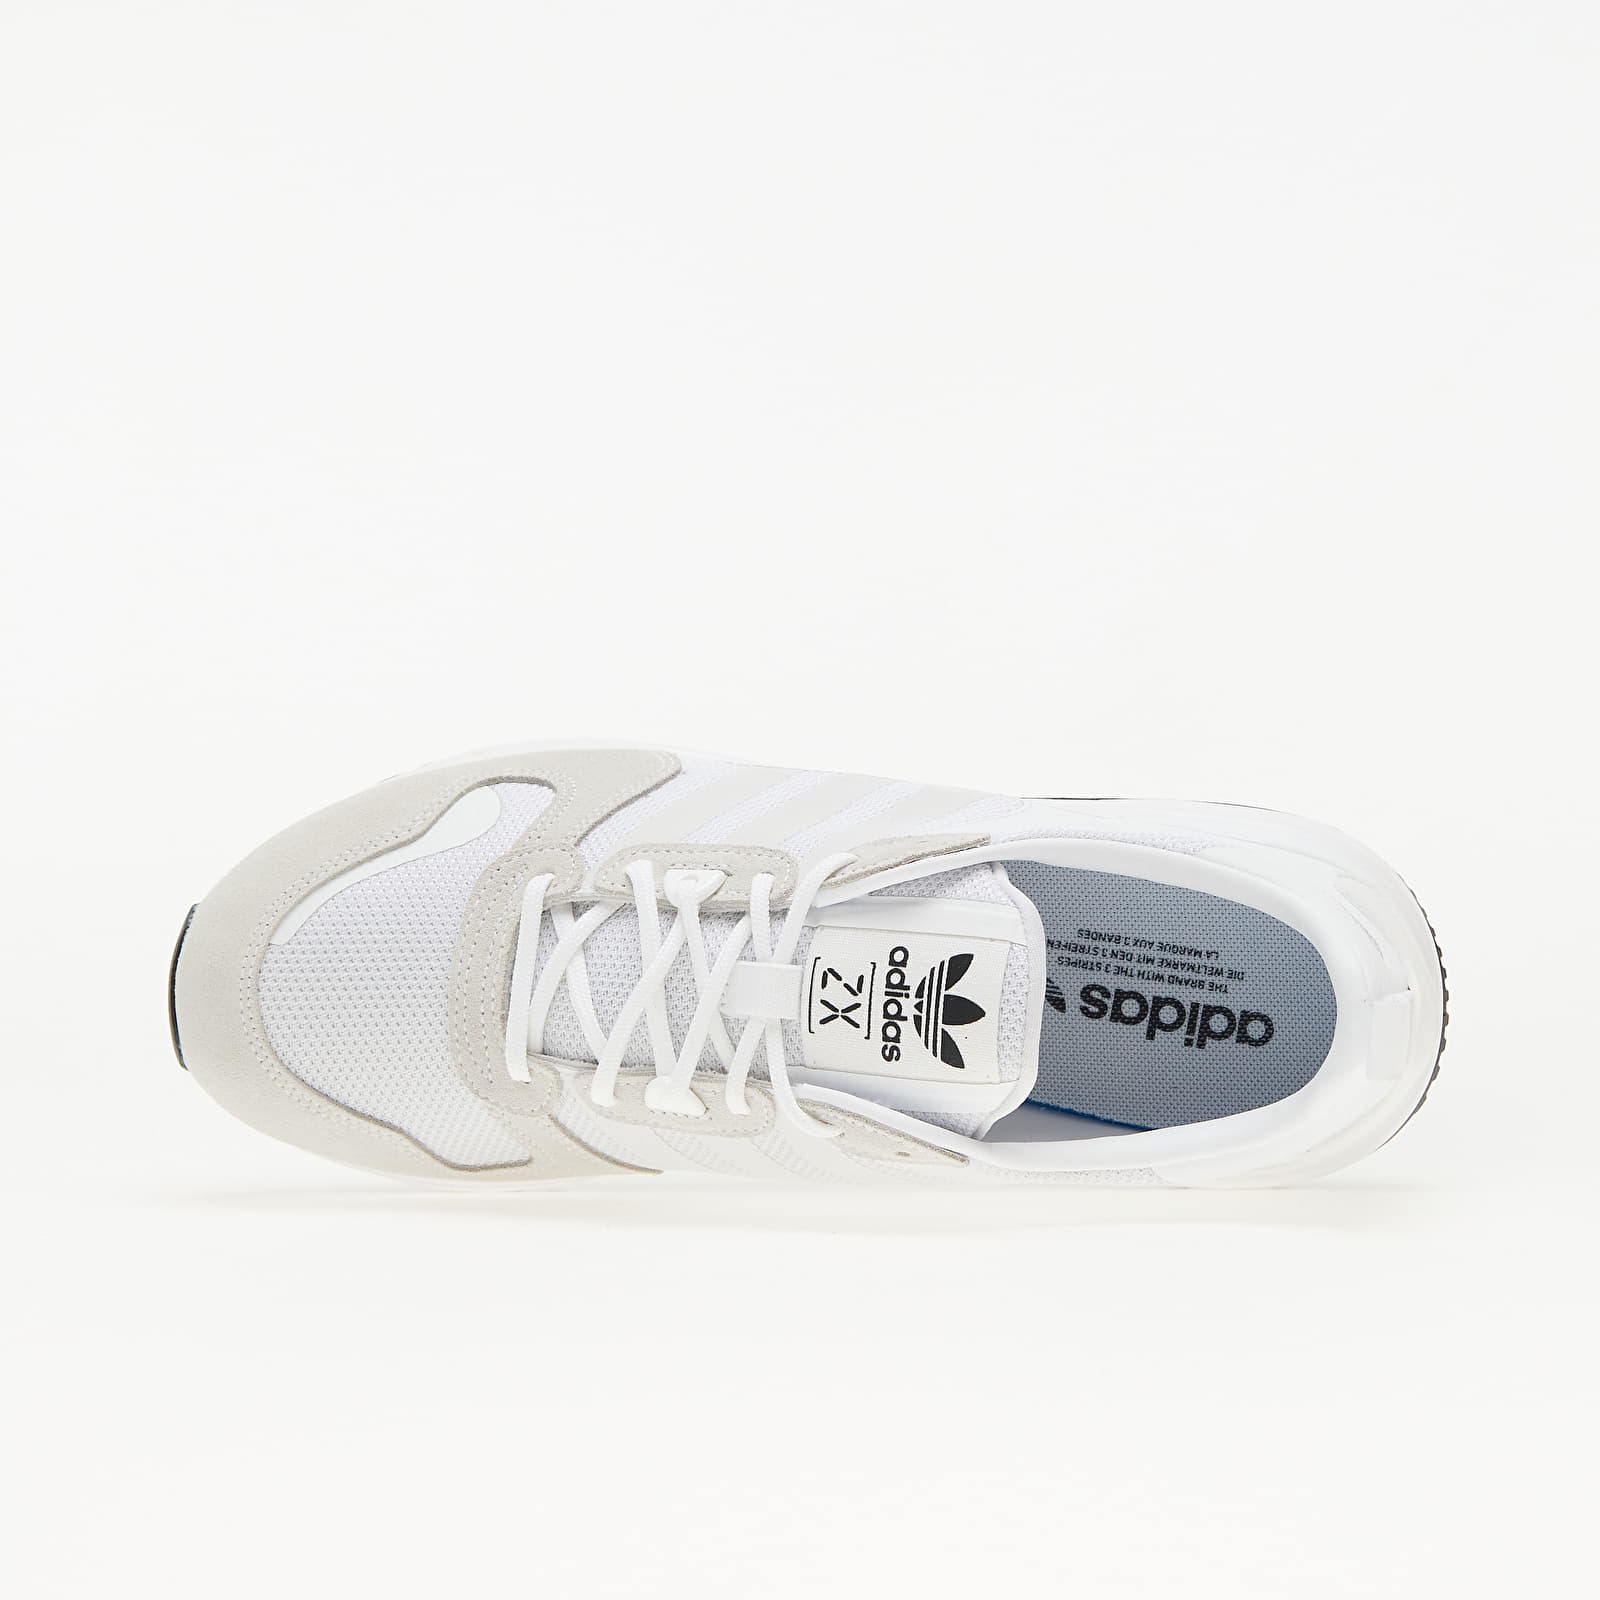 Men's shoes adidas ZX 700 HD Ftw White/ Ftw White/ Core Black | Footshop